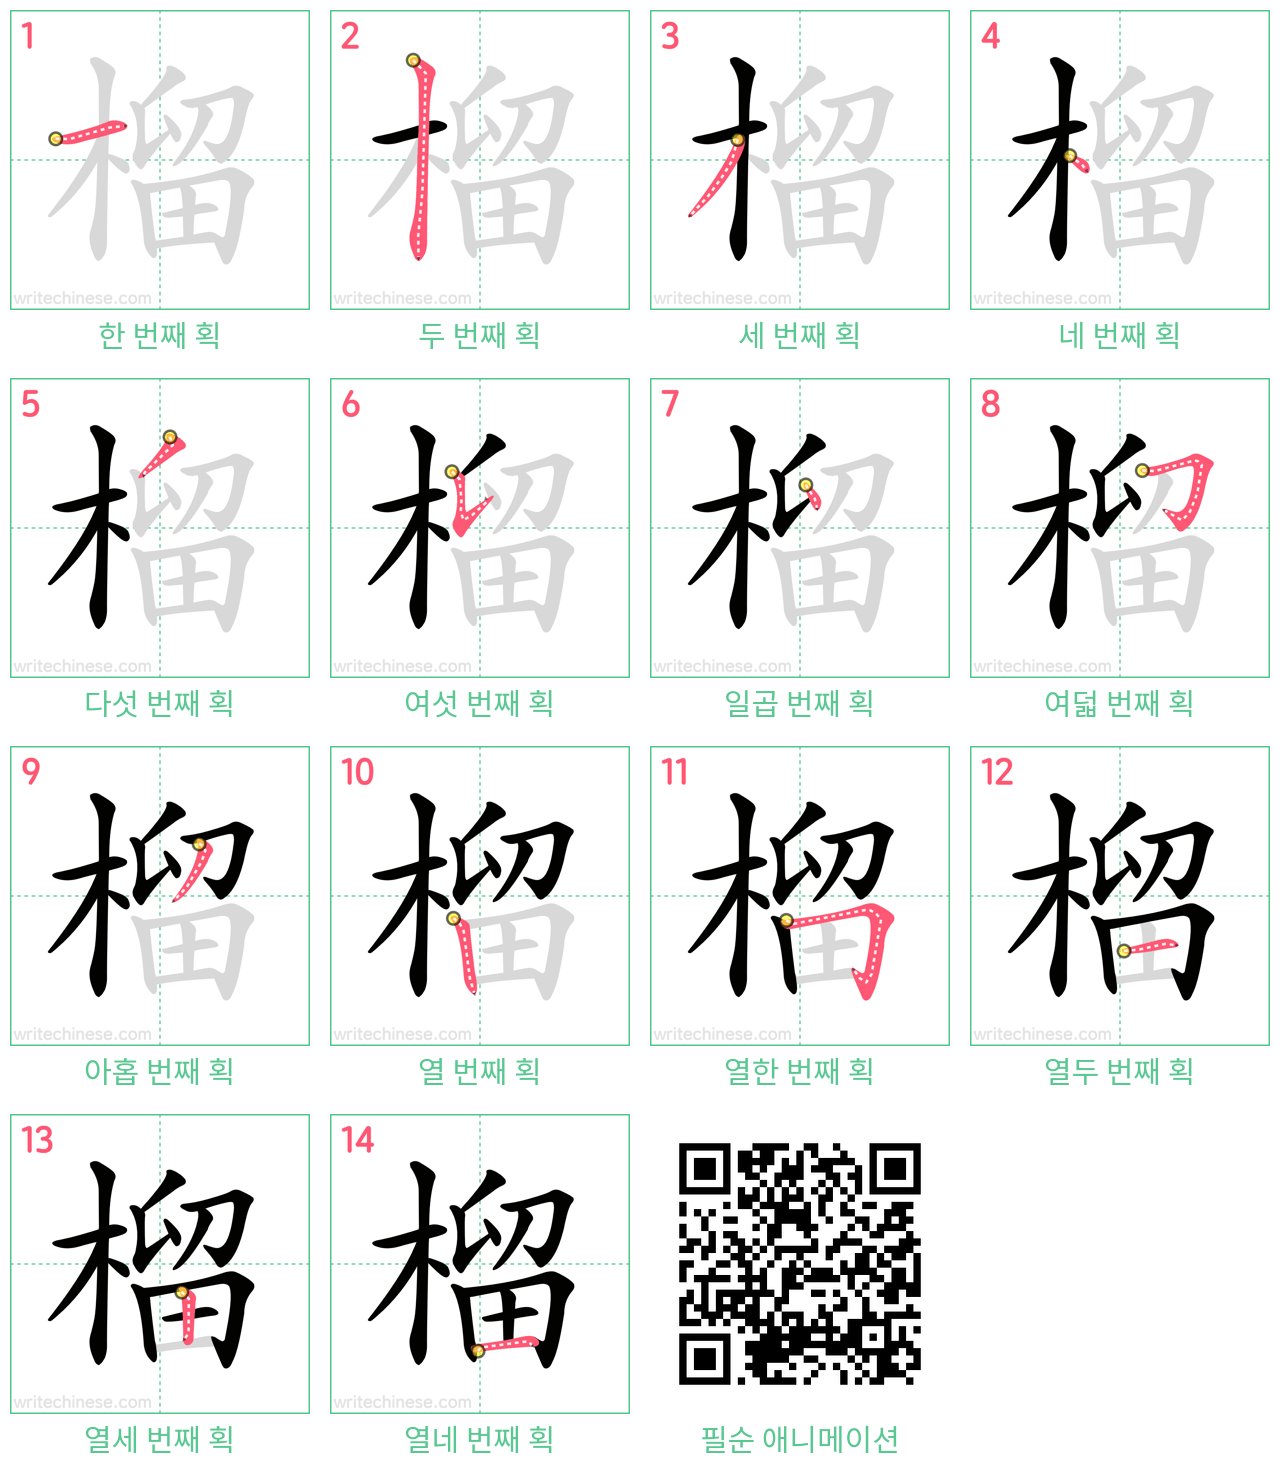 榴 step-by-step stroke order diagrams